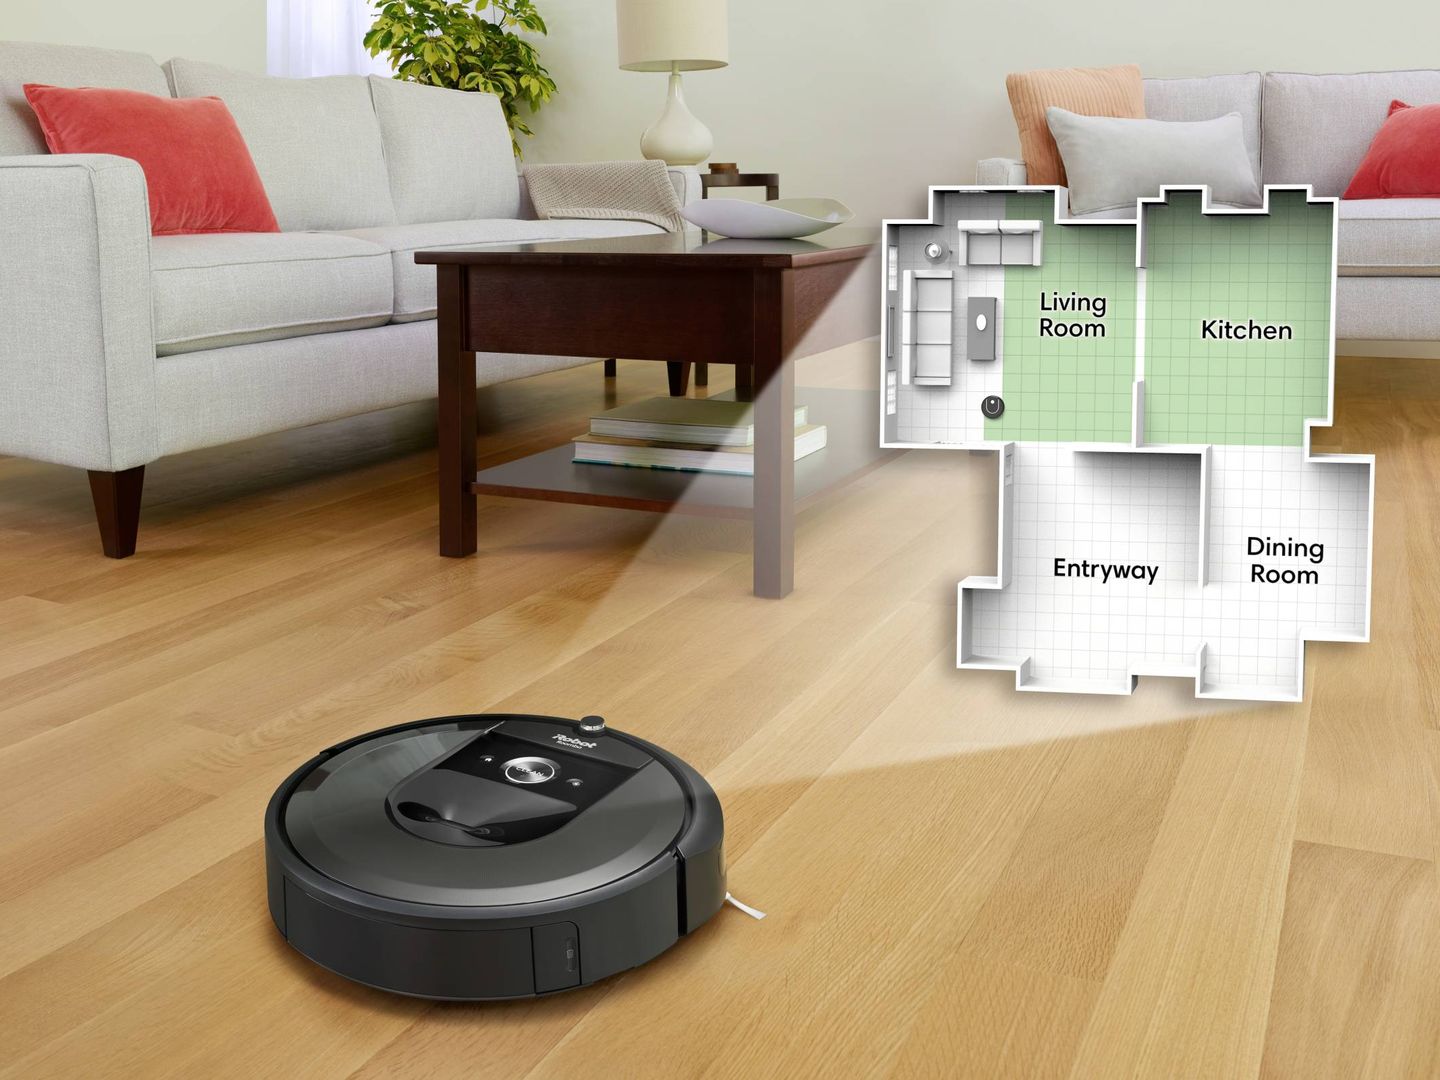 La nueva Roomba es capaz diferenciar habitaciones. (EC)